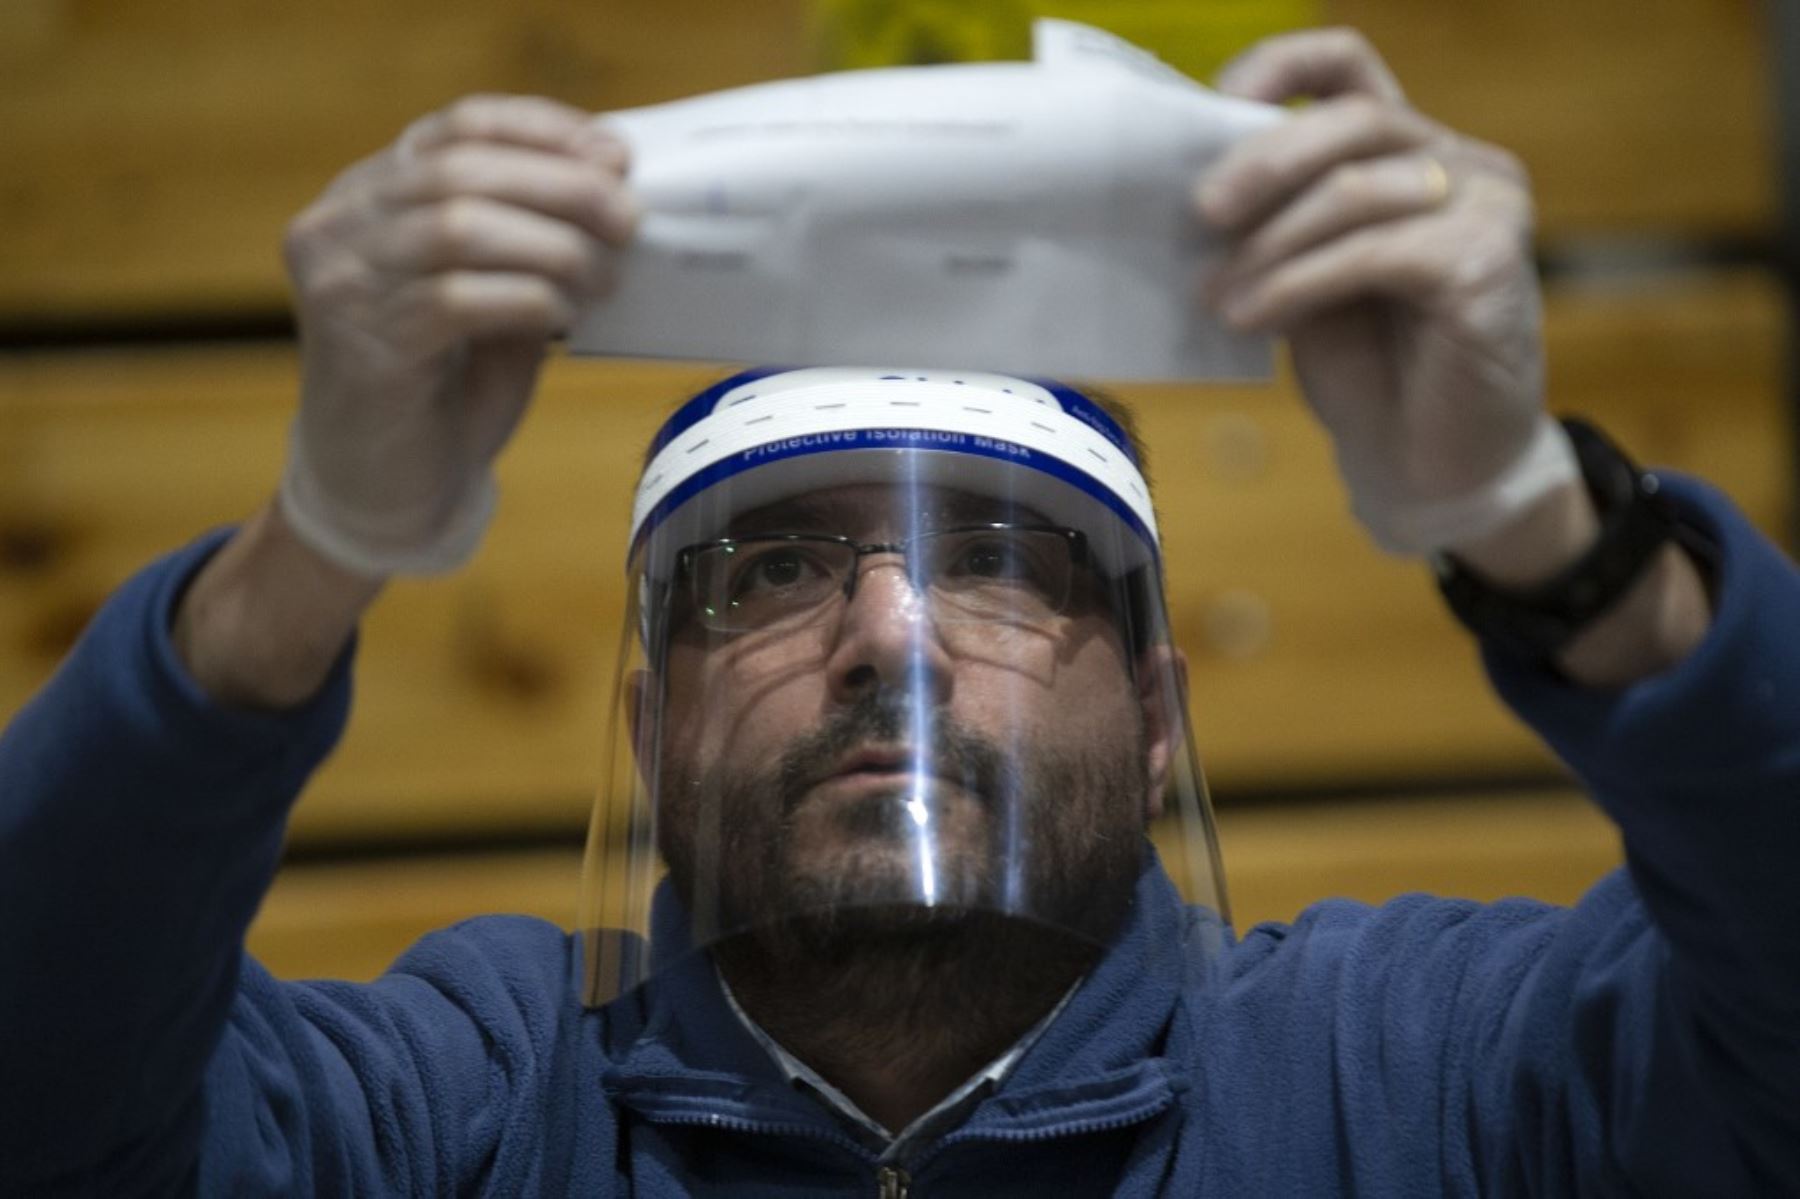 Un miembro del personal electoral cuenta las papeletas después del cierre de las urnas en la escuela secundaria Amunategui en Santiago, durante la votación del referéndum constitucional, en Santiago, Foto: AFP